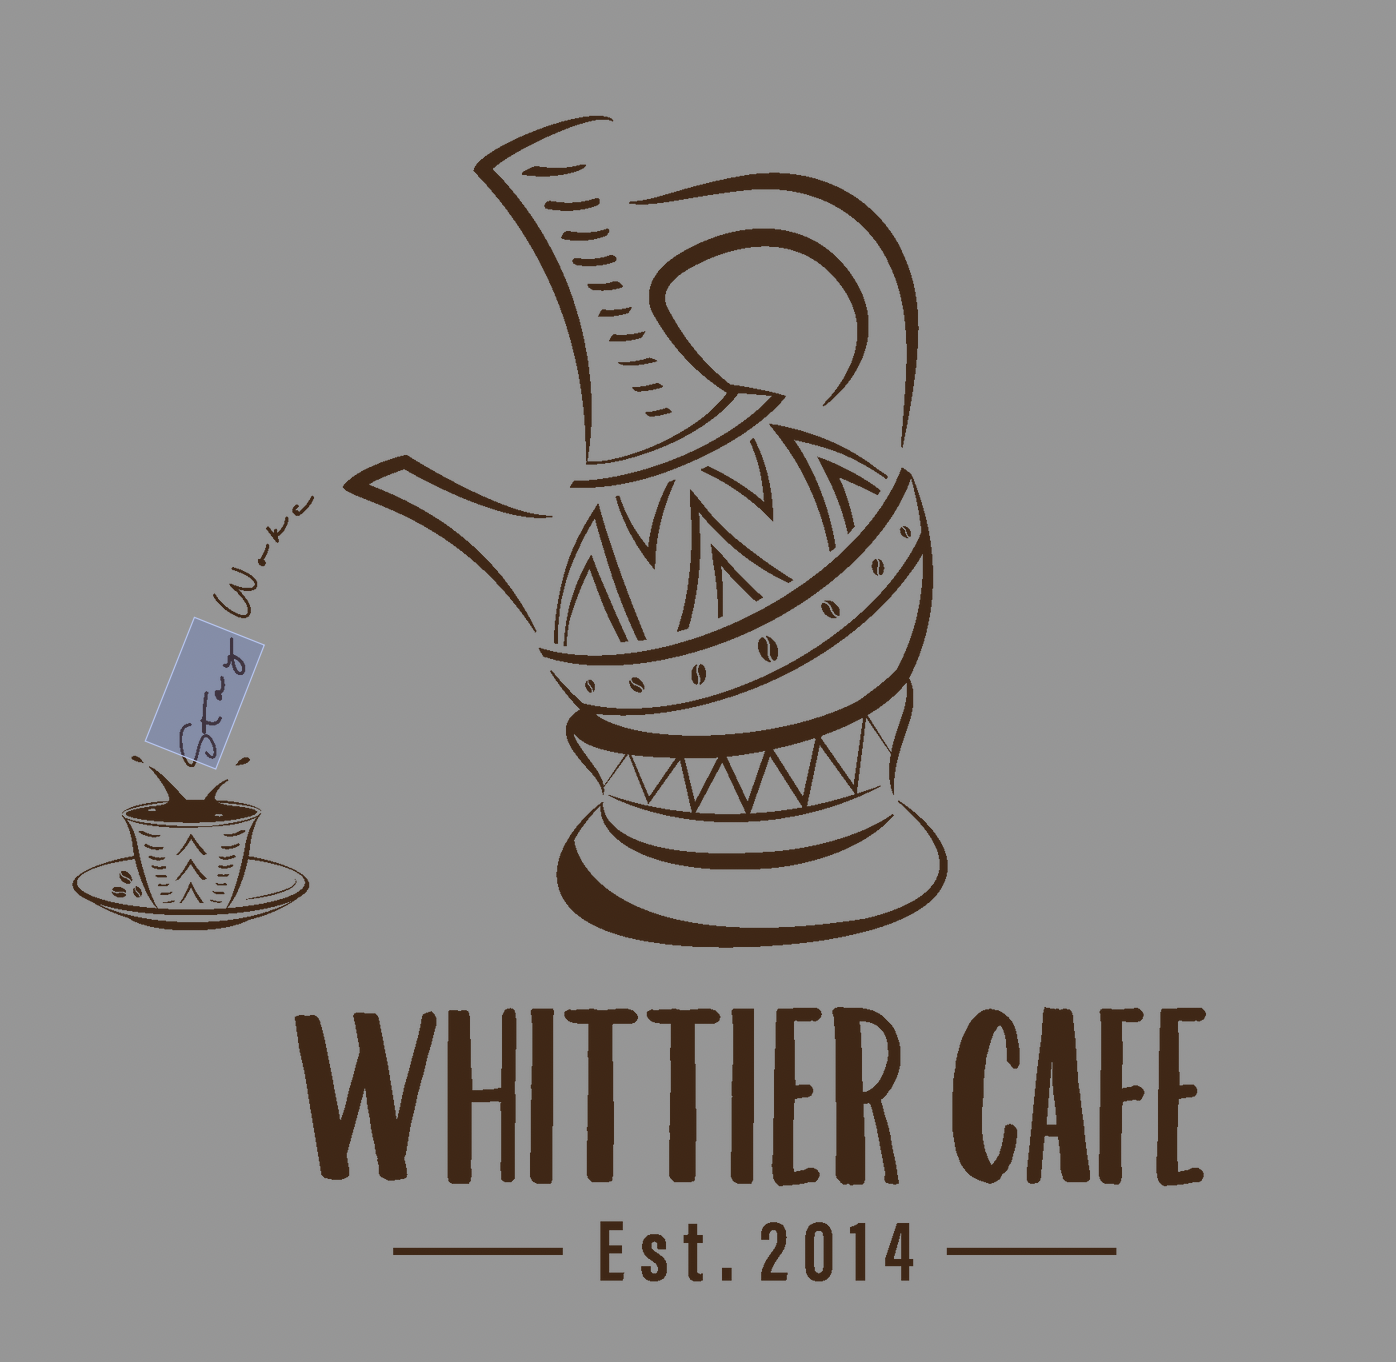 Sponsor Whittier Cafe